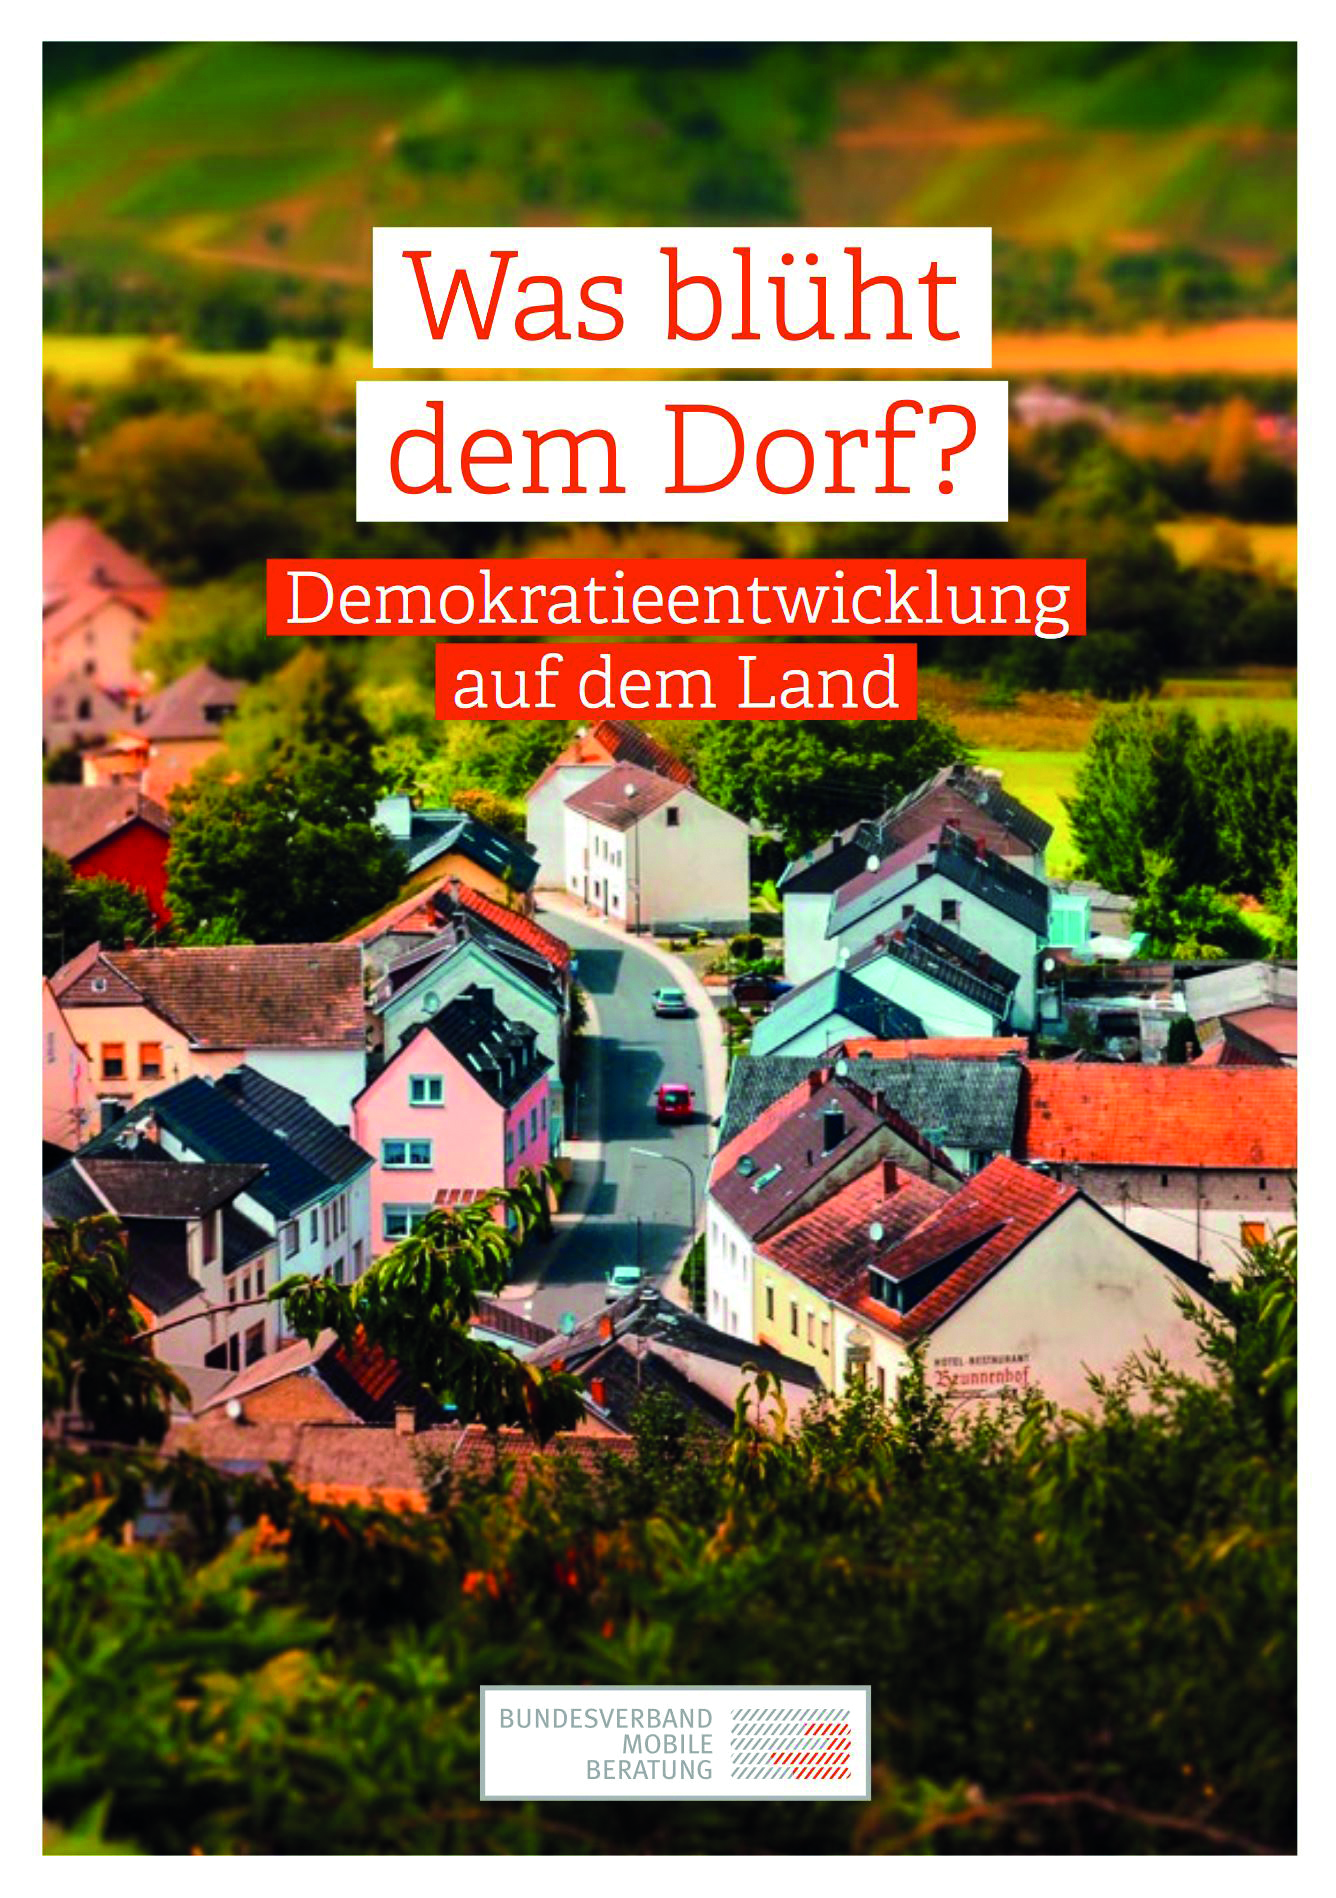 Bild vergrößern (Bild: Vorschaubild der Titelseite der Publikation des BMB mit dem Titel "Was blüht dem Dorf")